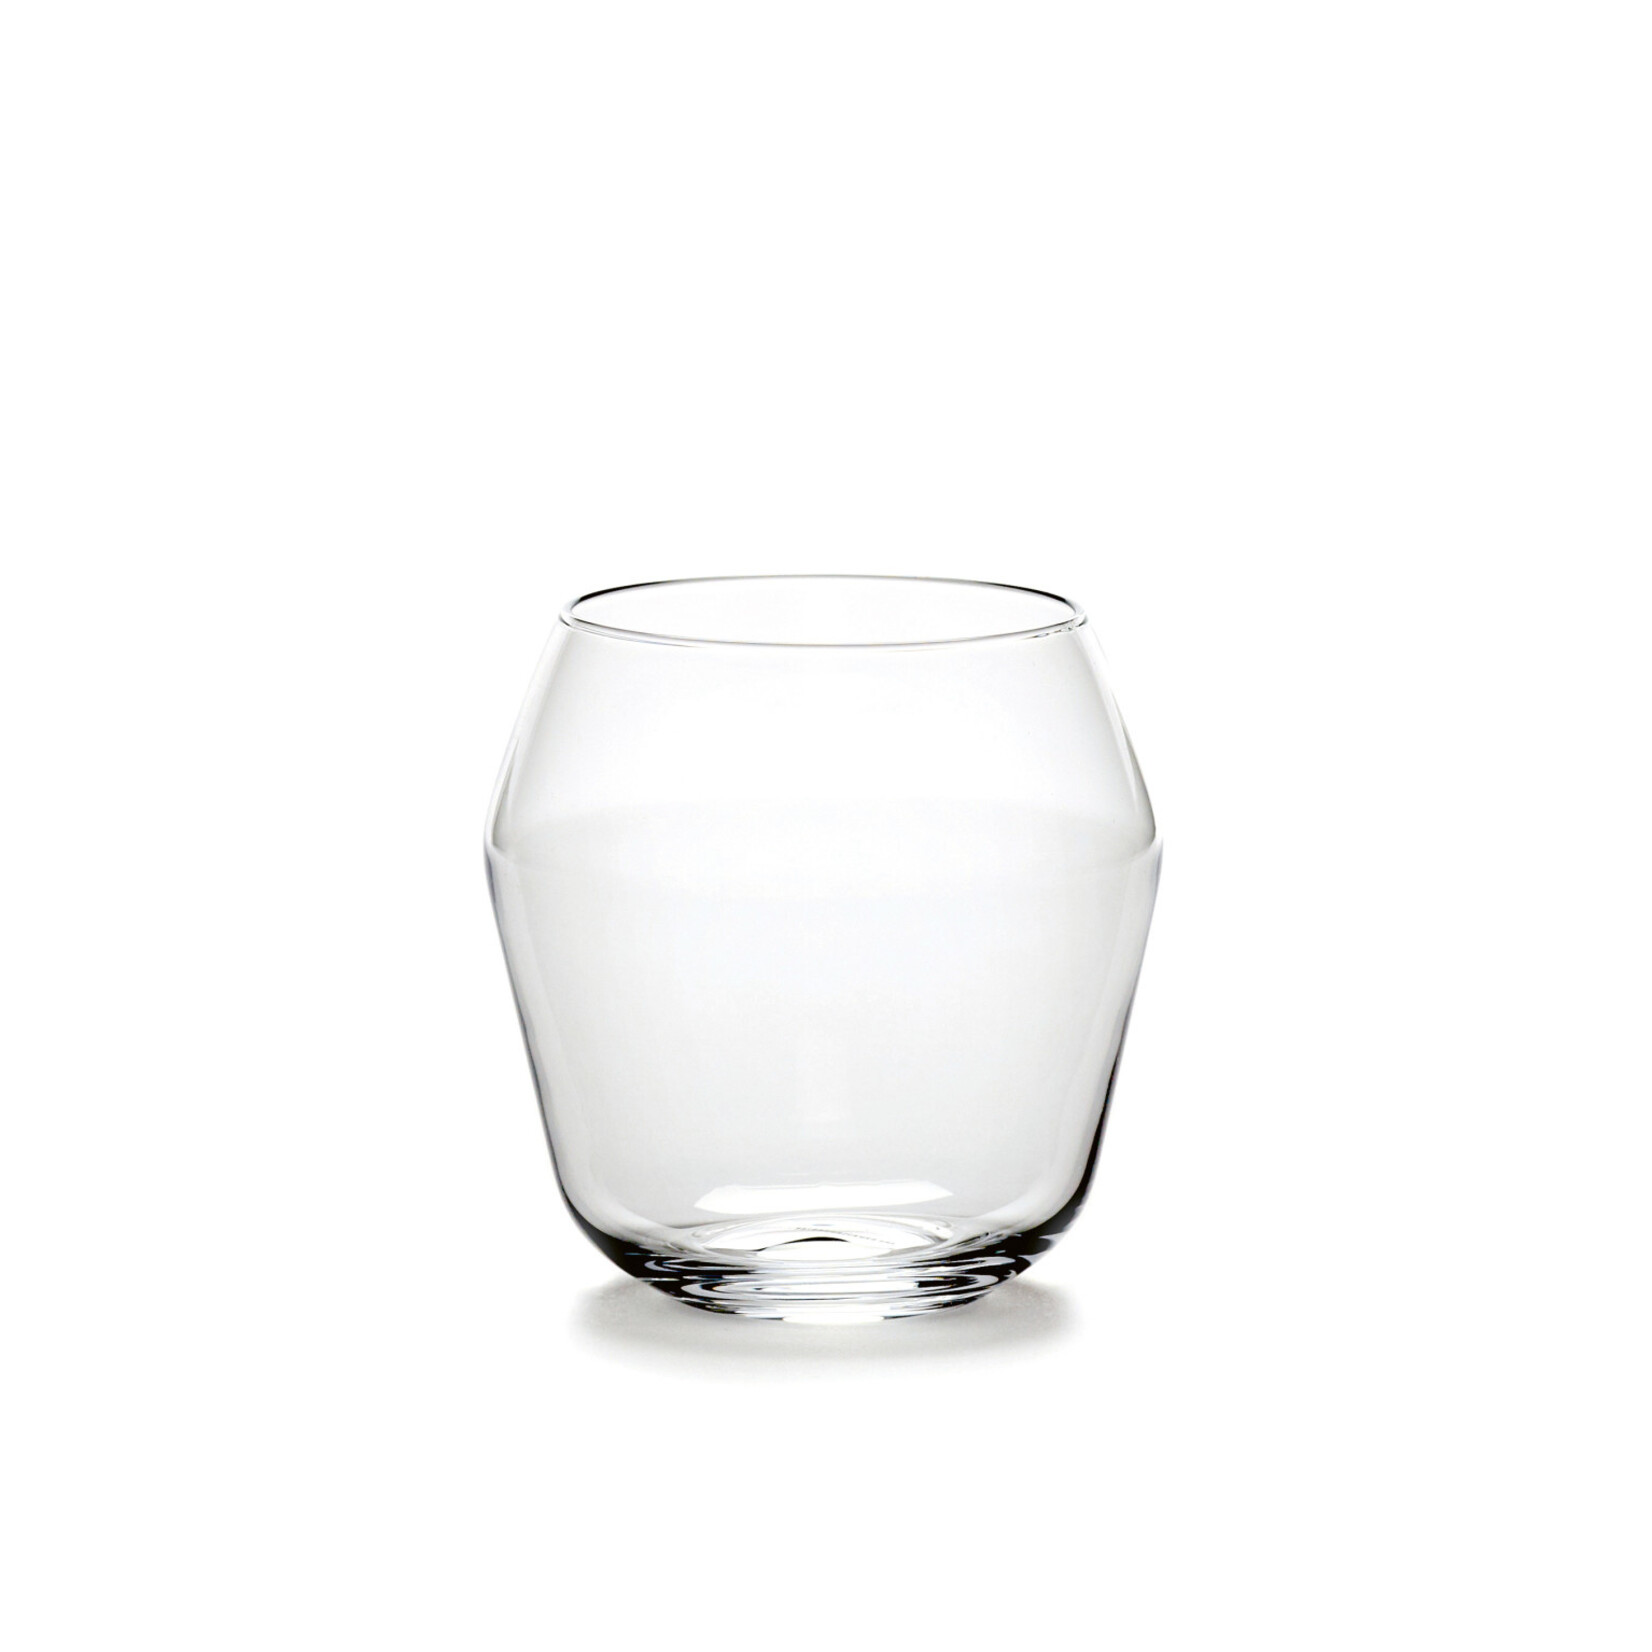 Serax Billie waterglas (4 stks)